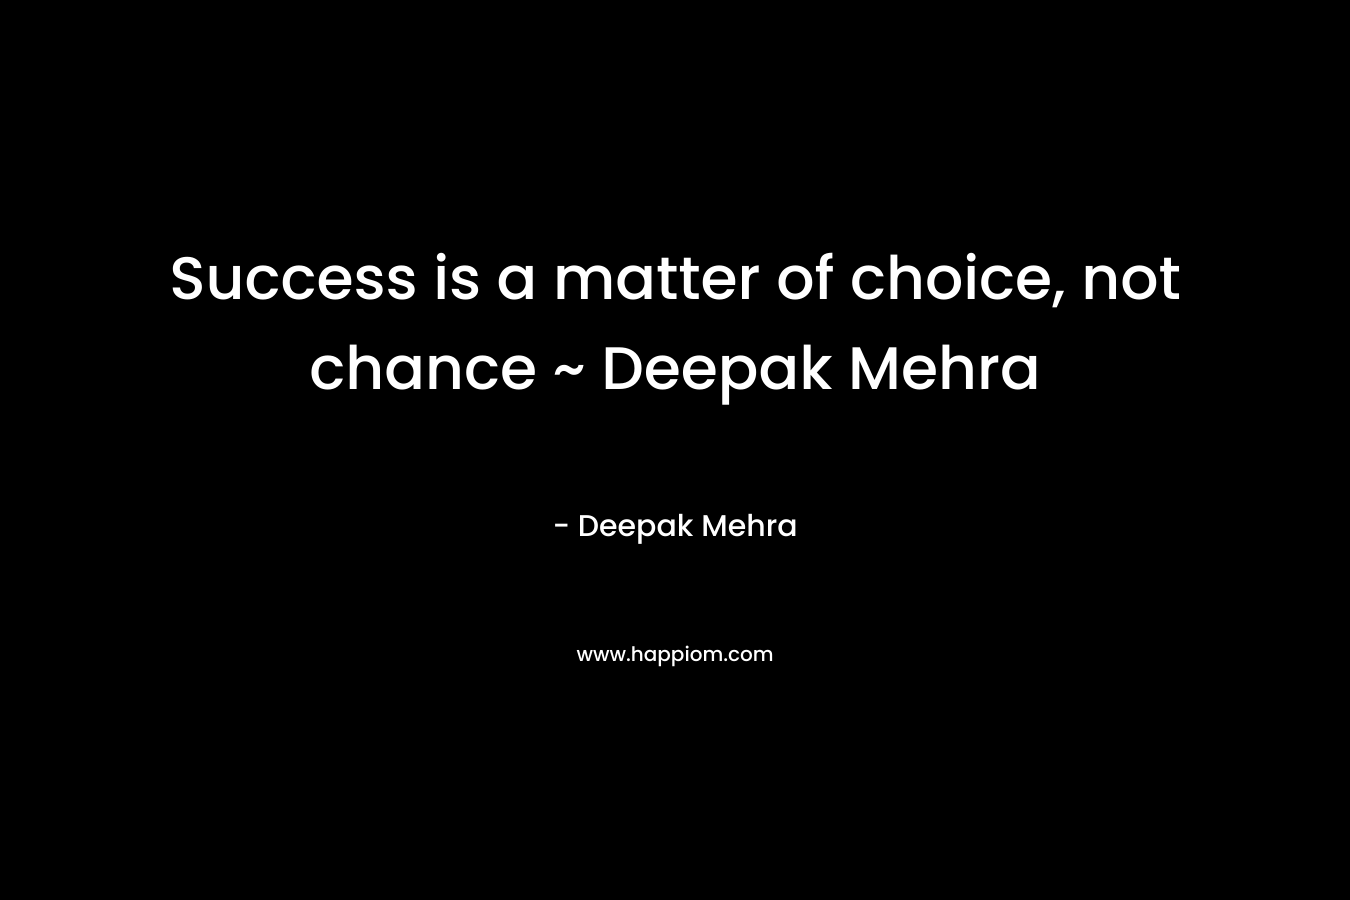 Success is a matter of choice, not chance ~ Deepak Mehra